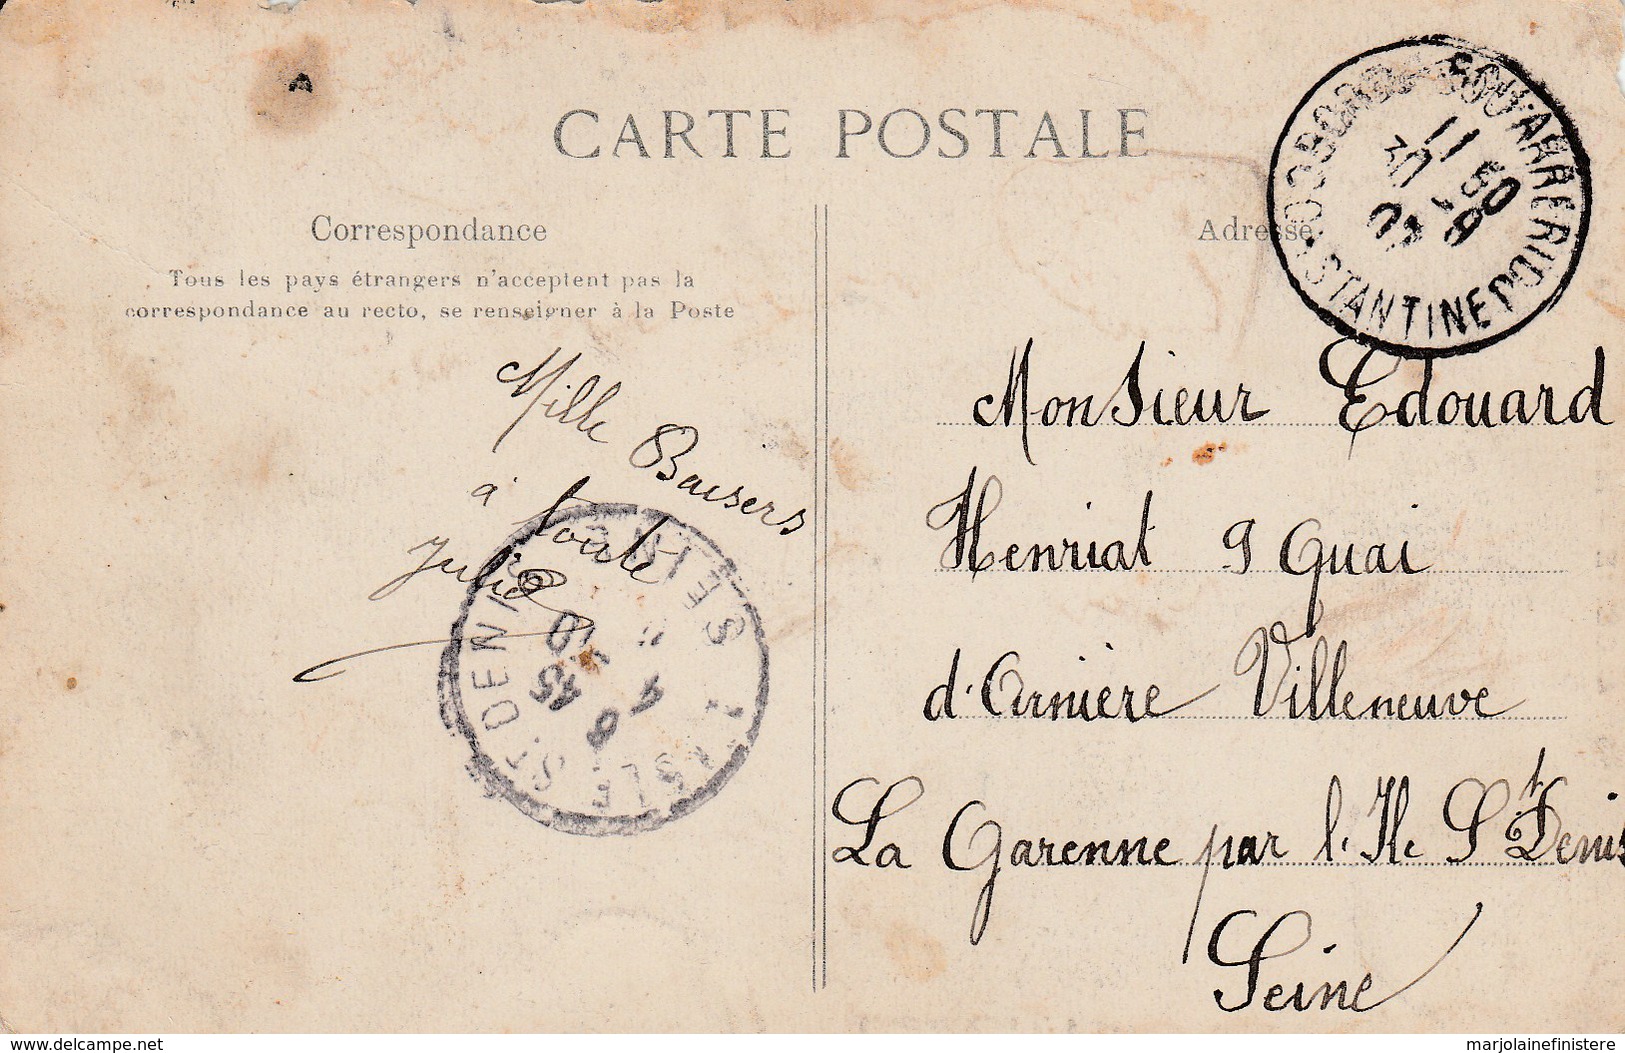 ALGERIE - Intérieur Arabe. Collection Idéale P. S.  N° 44 Voyagée 1907 - Autres & Non Classés